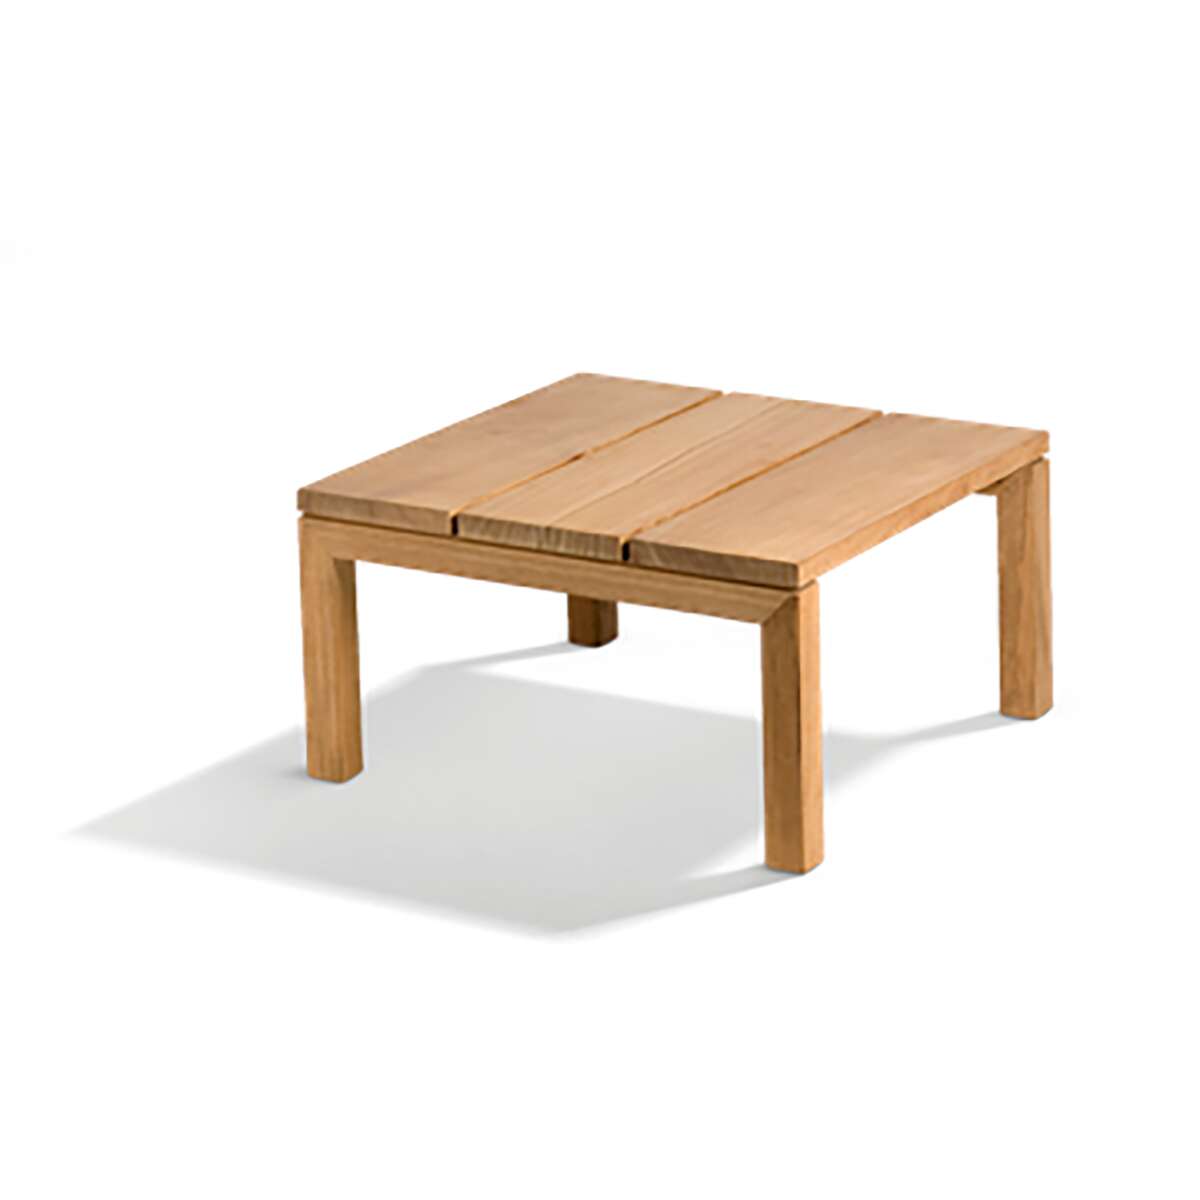 Kos Side table/Footstool